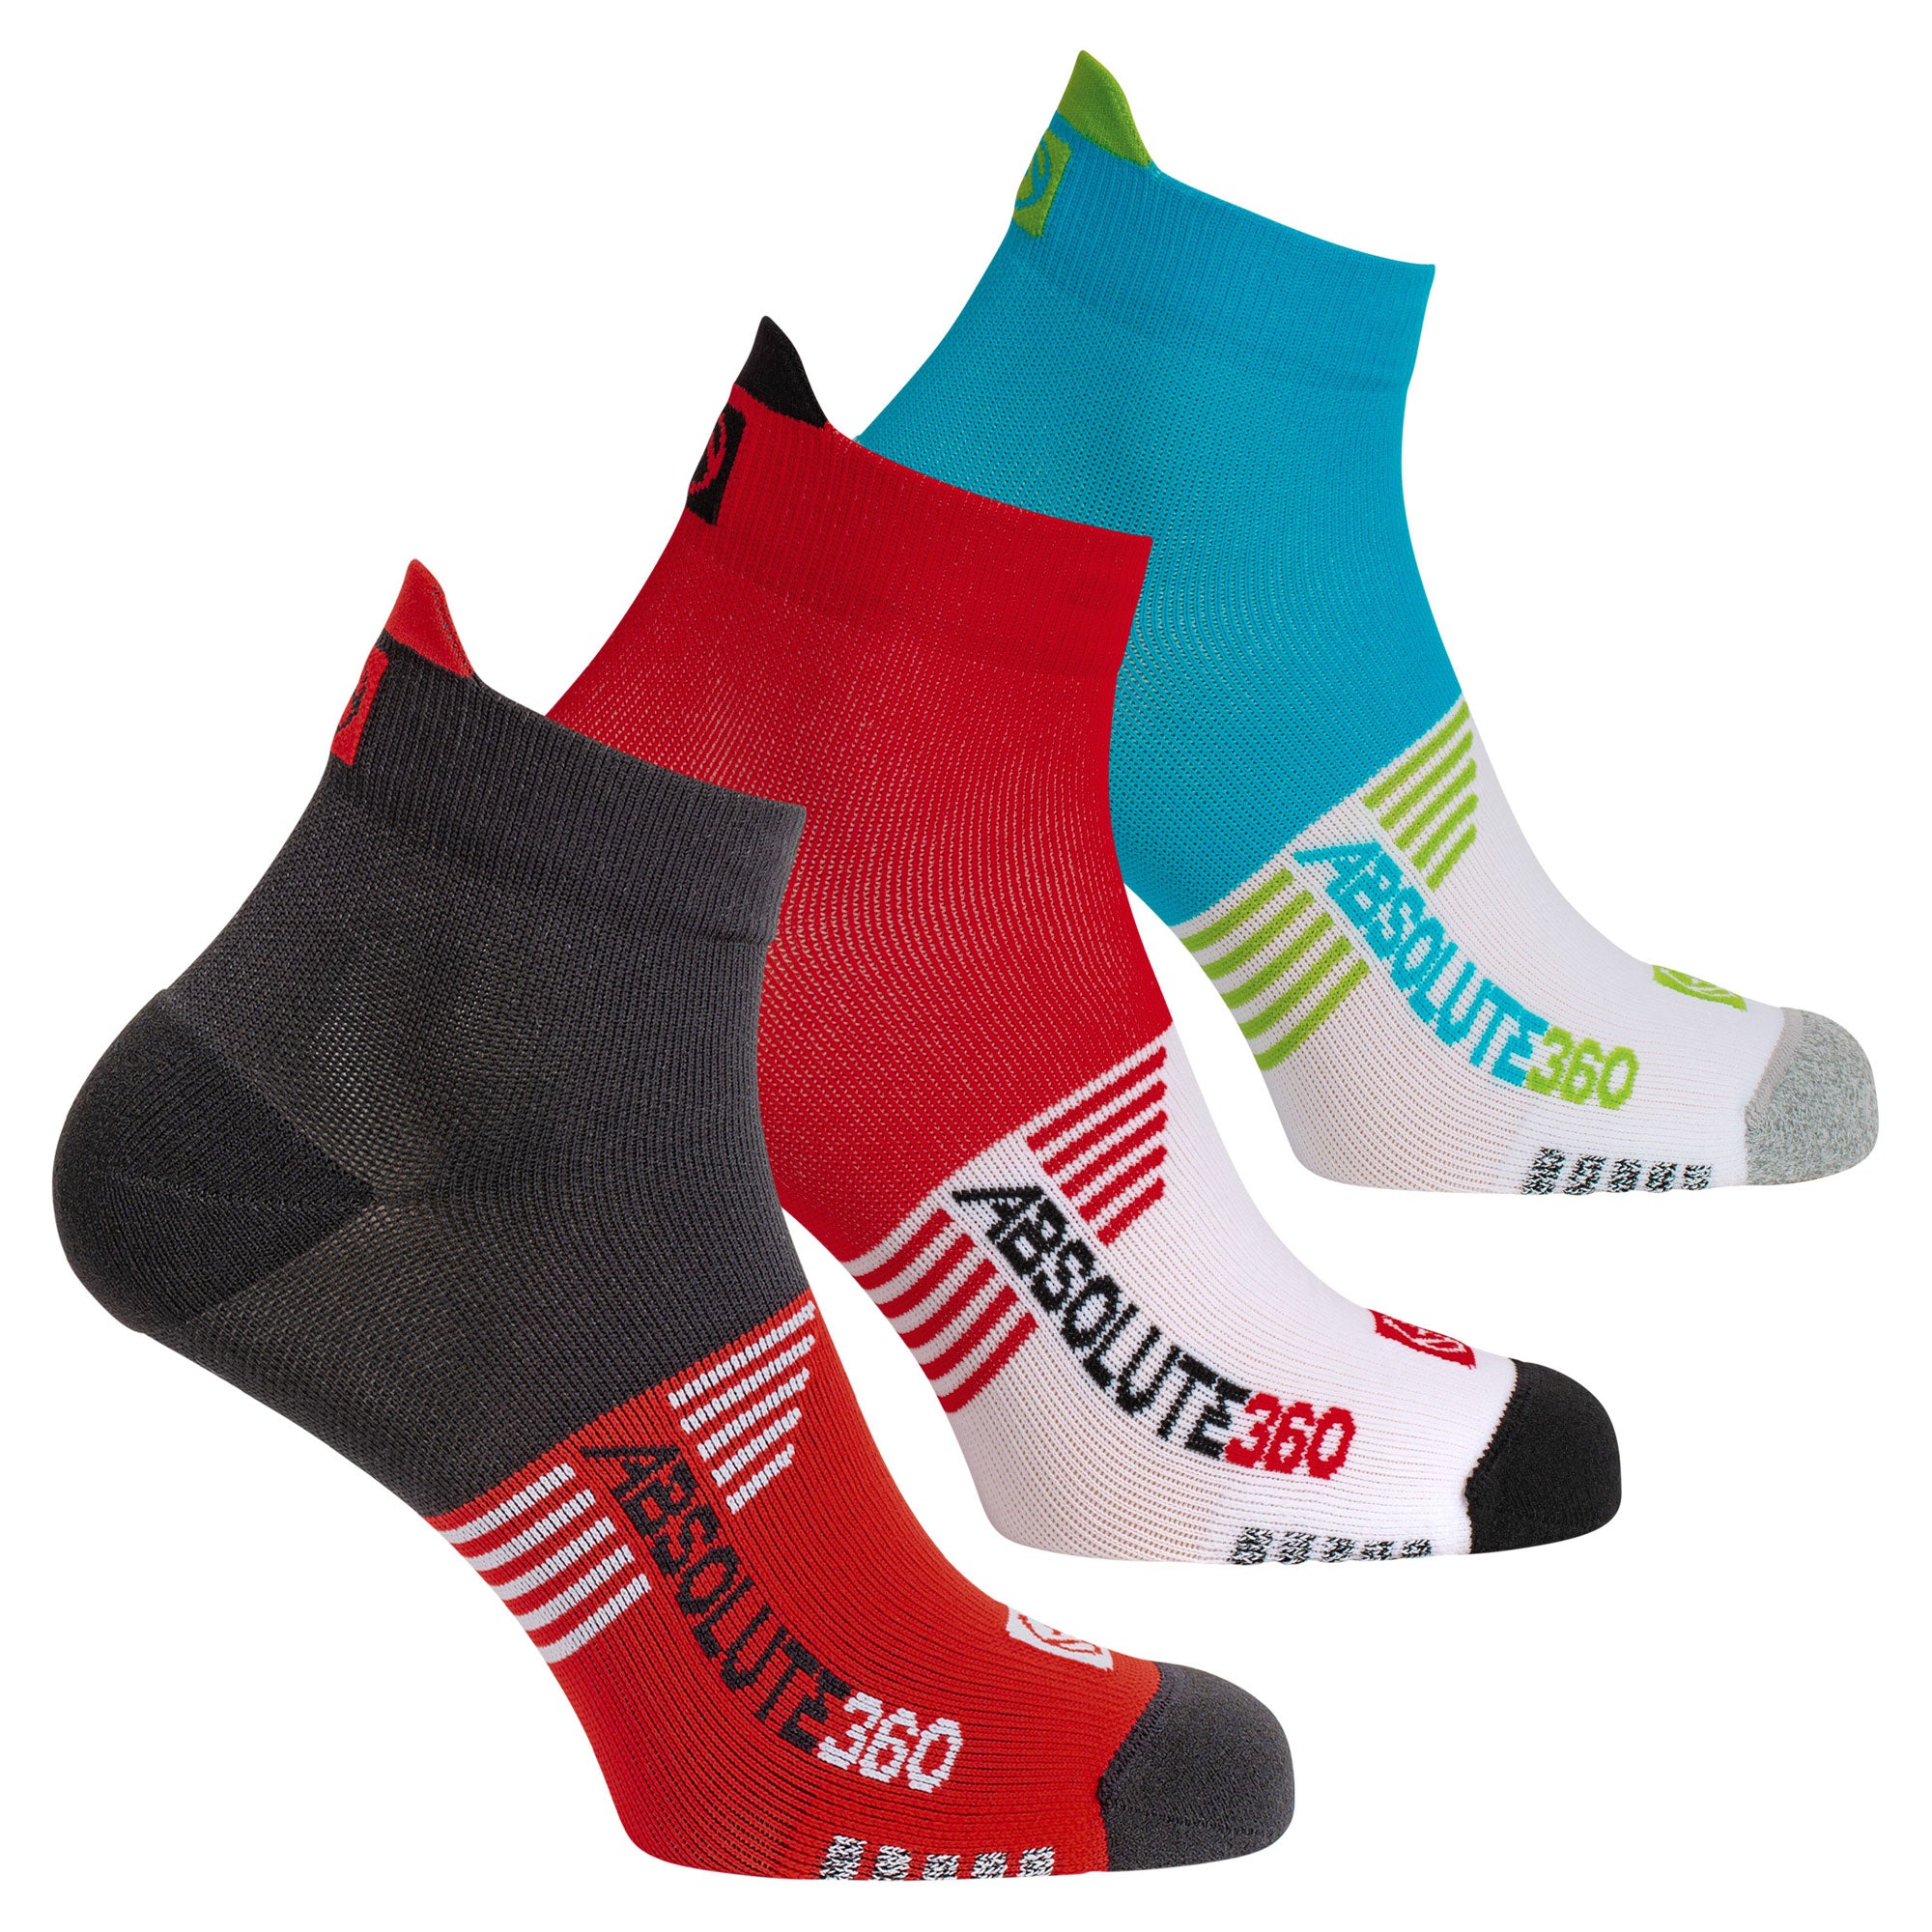 Performance Running Socks - Ankle (3-pack)